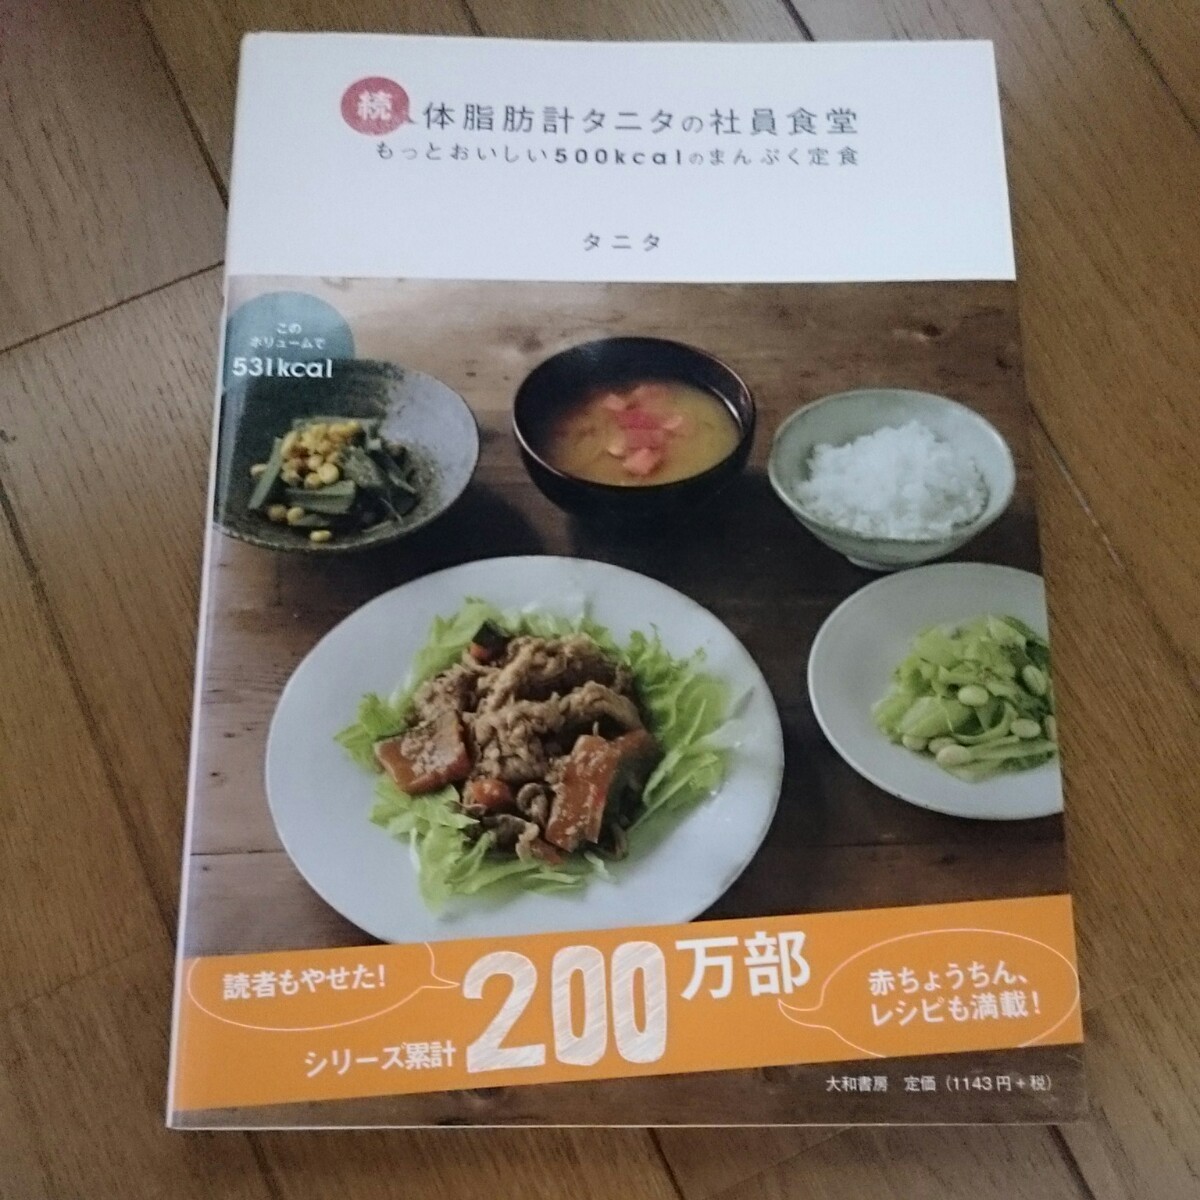 本二冊セット タニタ 1食100円病気にならない食事